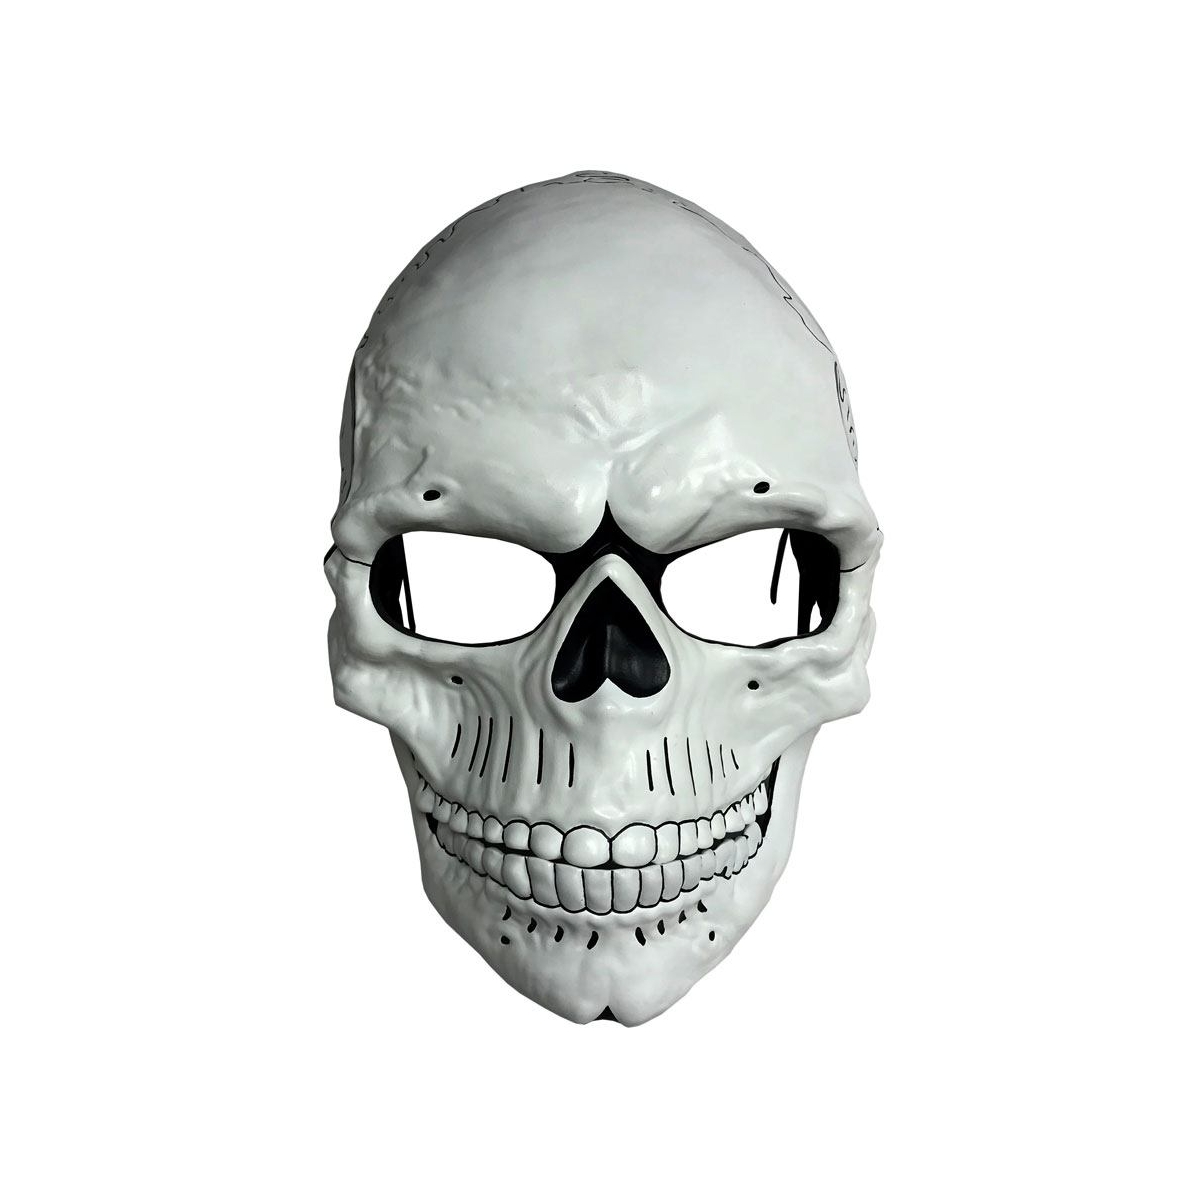 Film 007 JAMES BOND Spectre Masque Crâne Squelette Effrayant